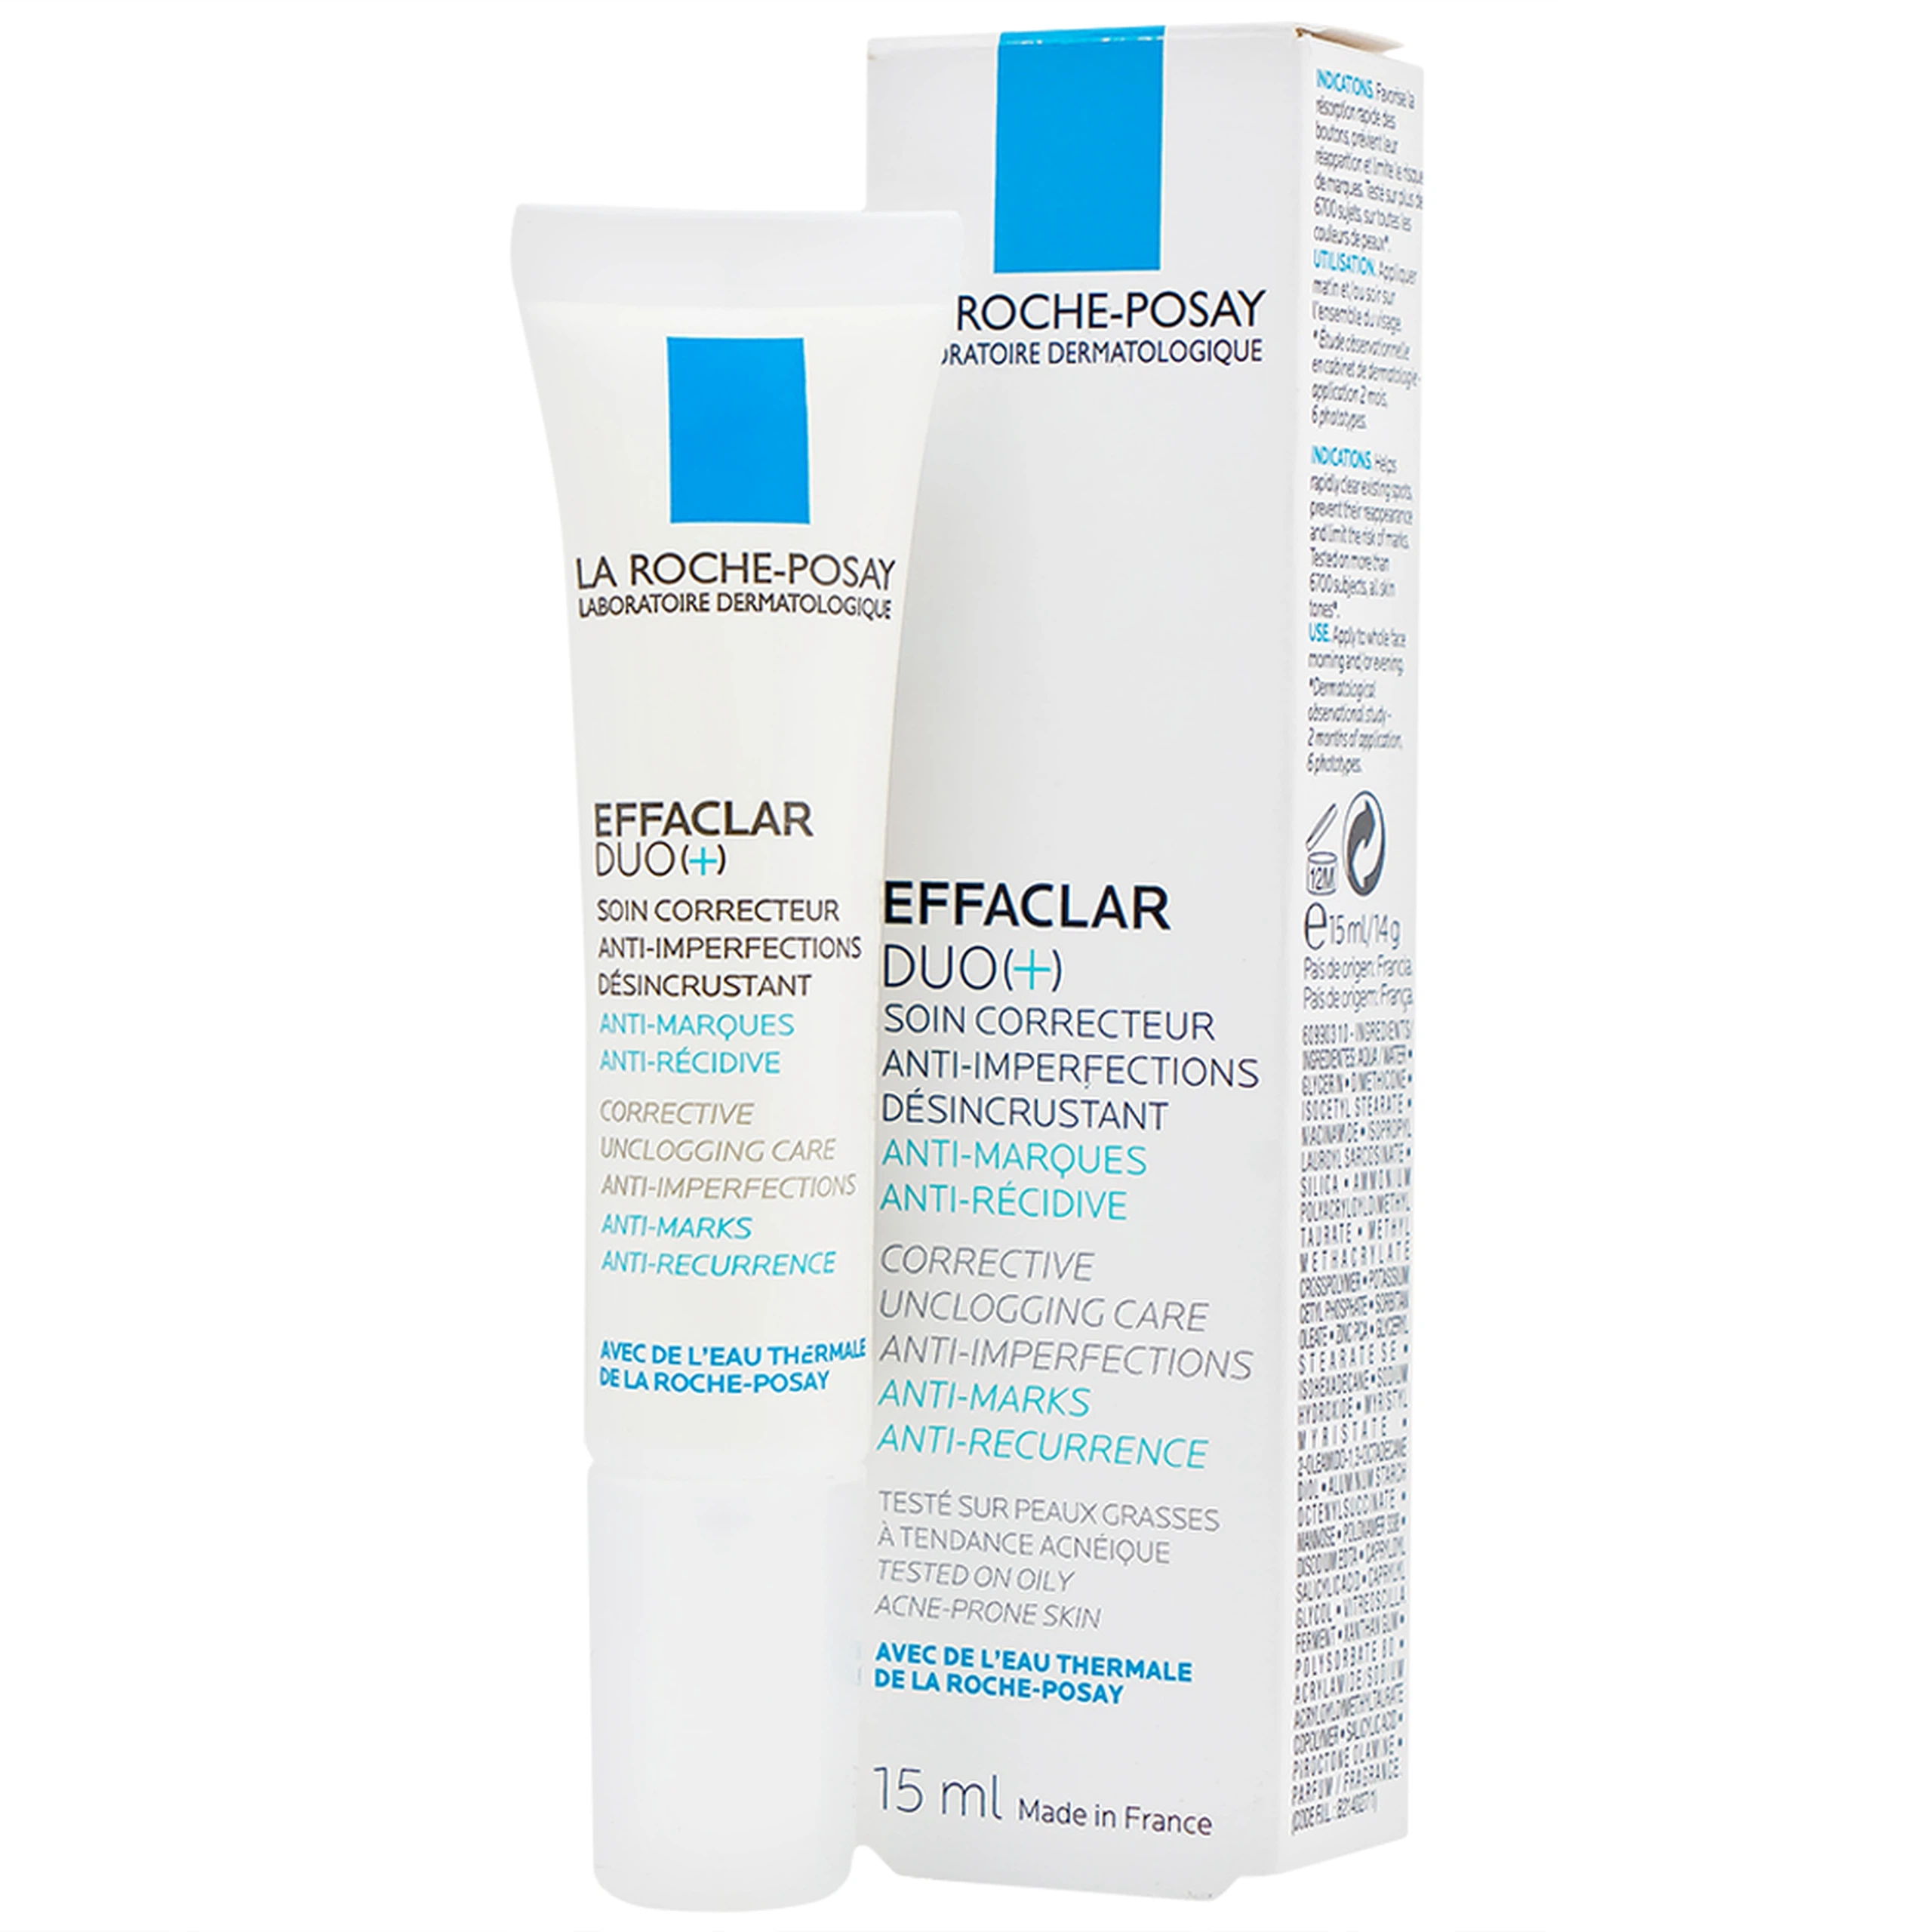 Kem dưỡng da La Roche-Posay Effaclar Duo+ hỗ trợ giảm mụn, thông thoáng lỗ chân lông, ngăn ngừa thâm (15ml)